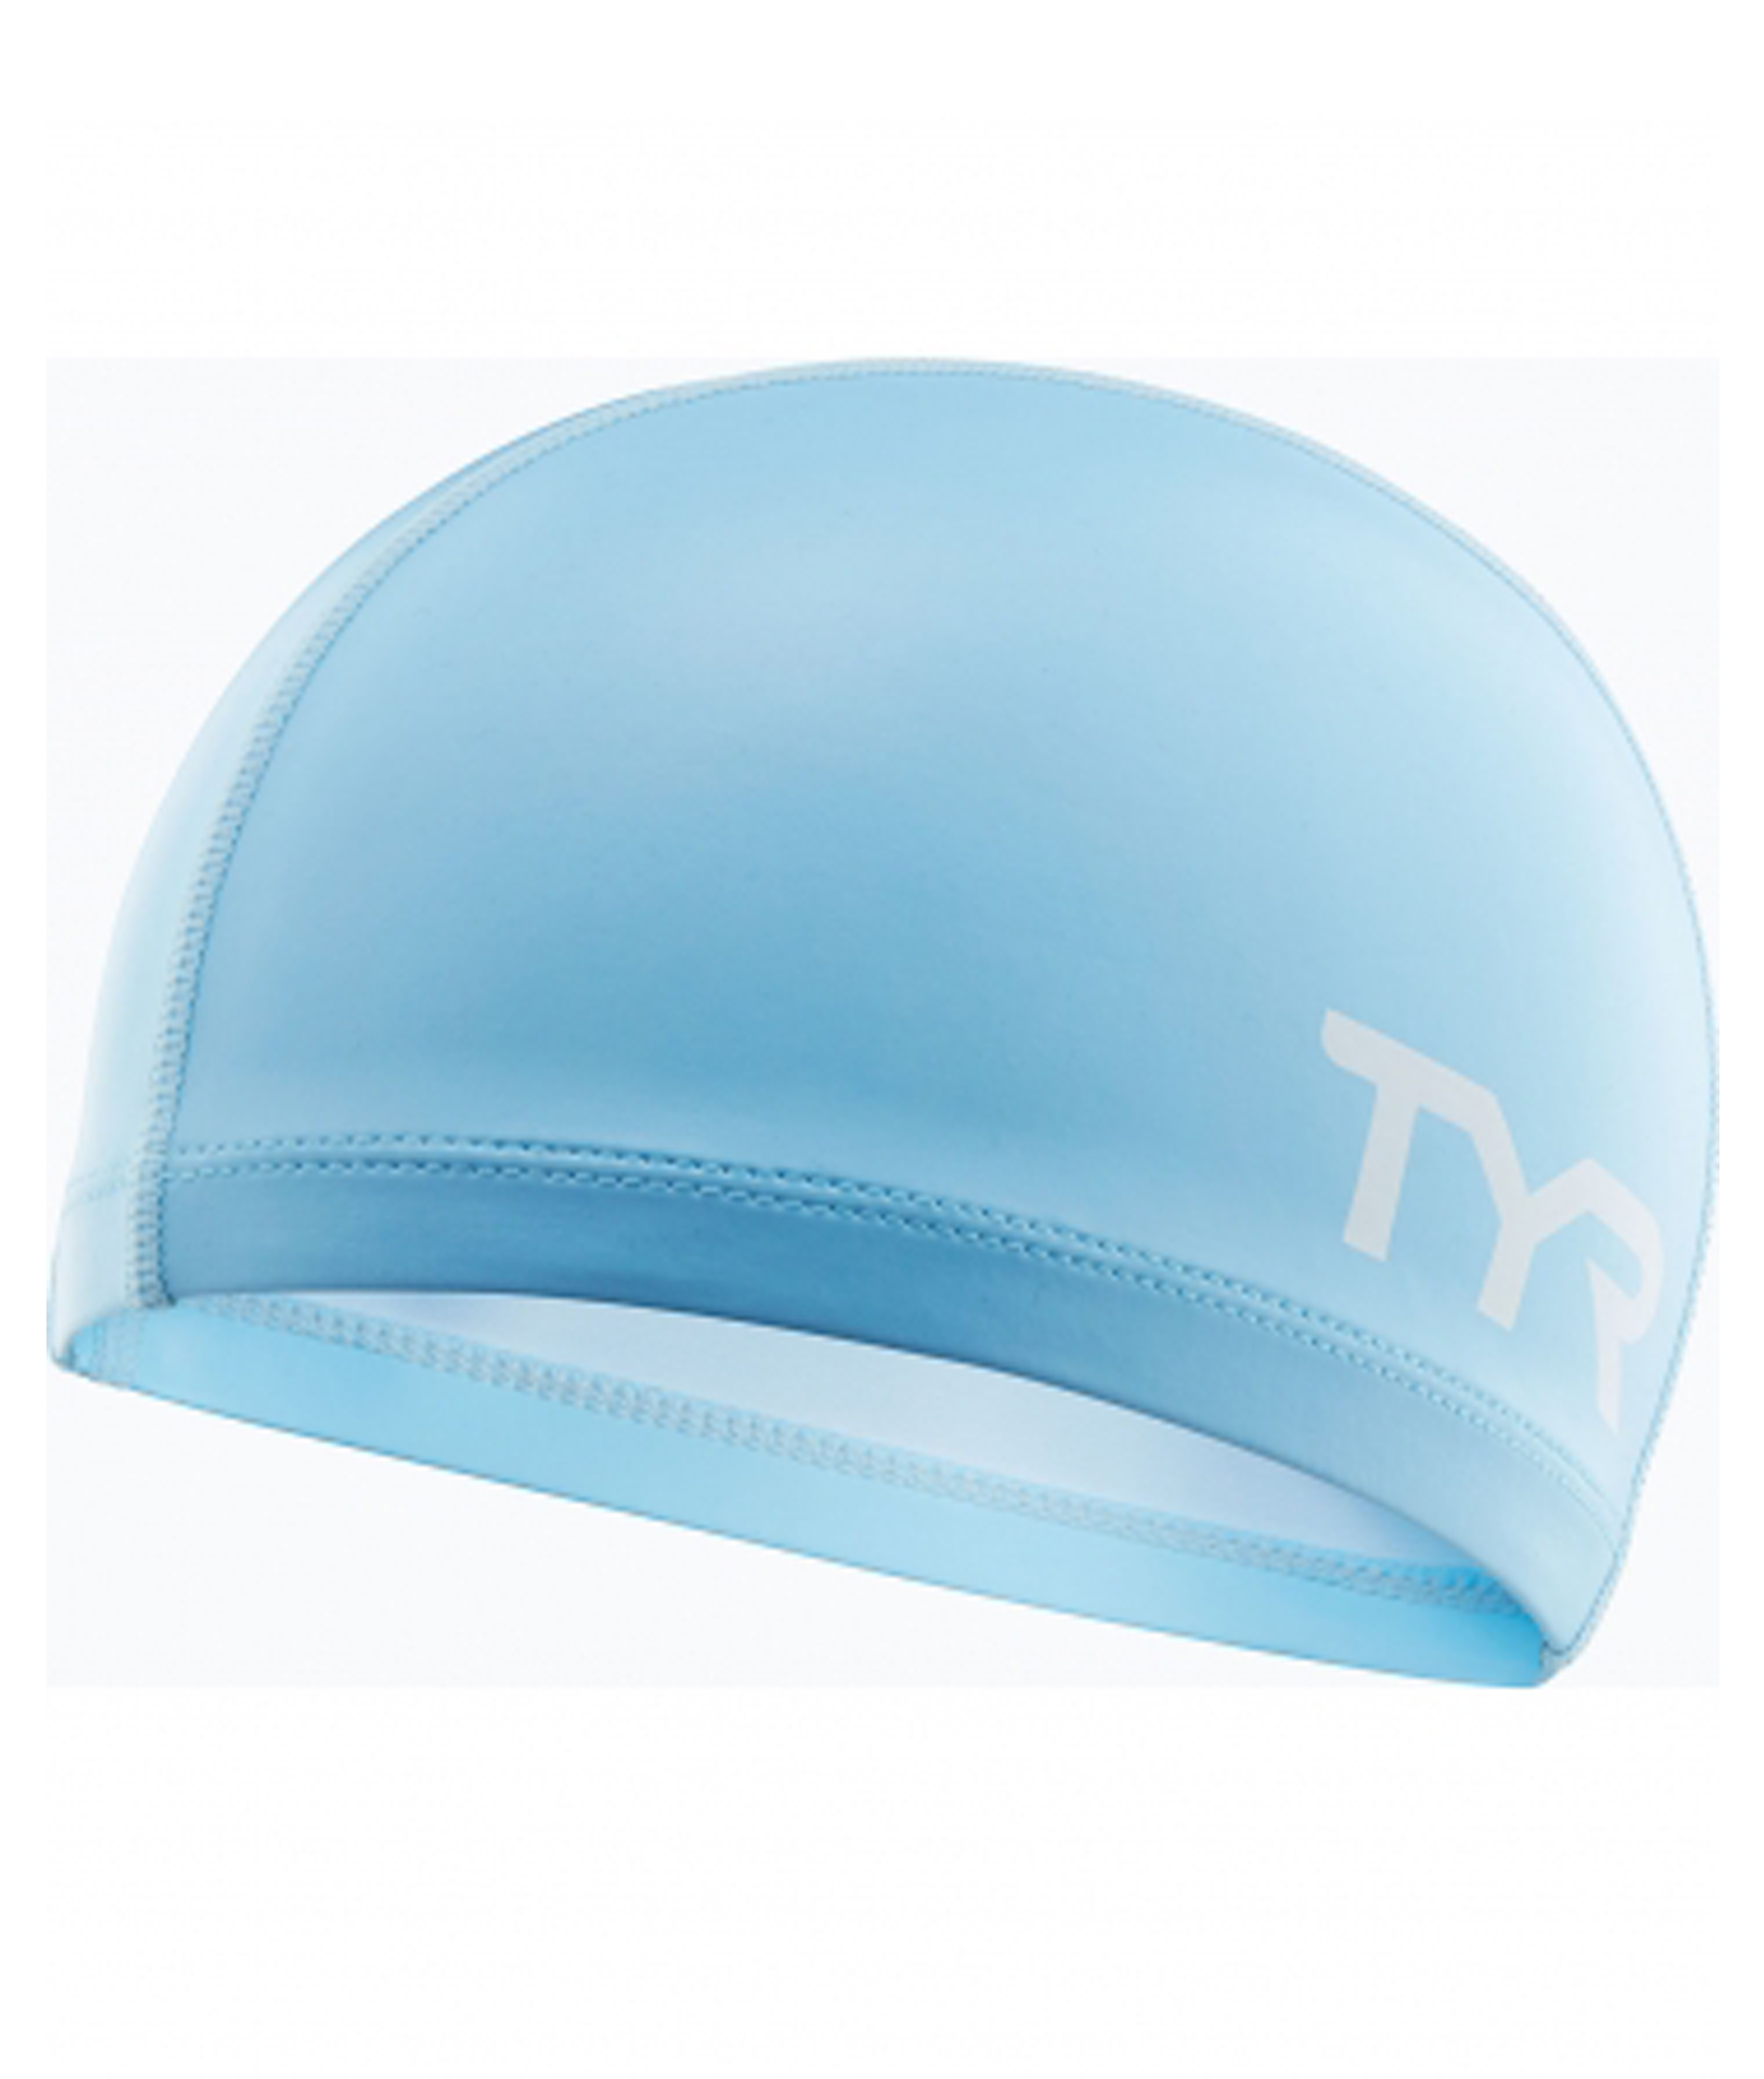 TYR Silicone Comfort Junior Swim Cap - Light Blue